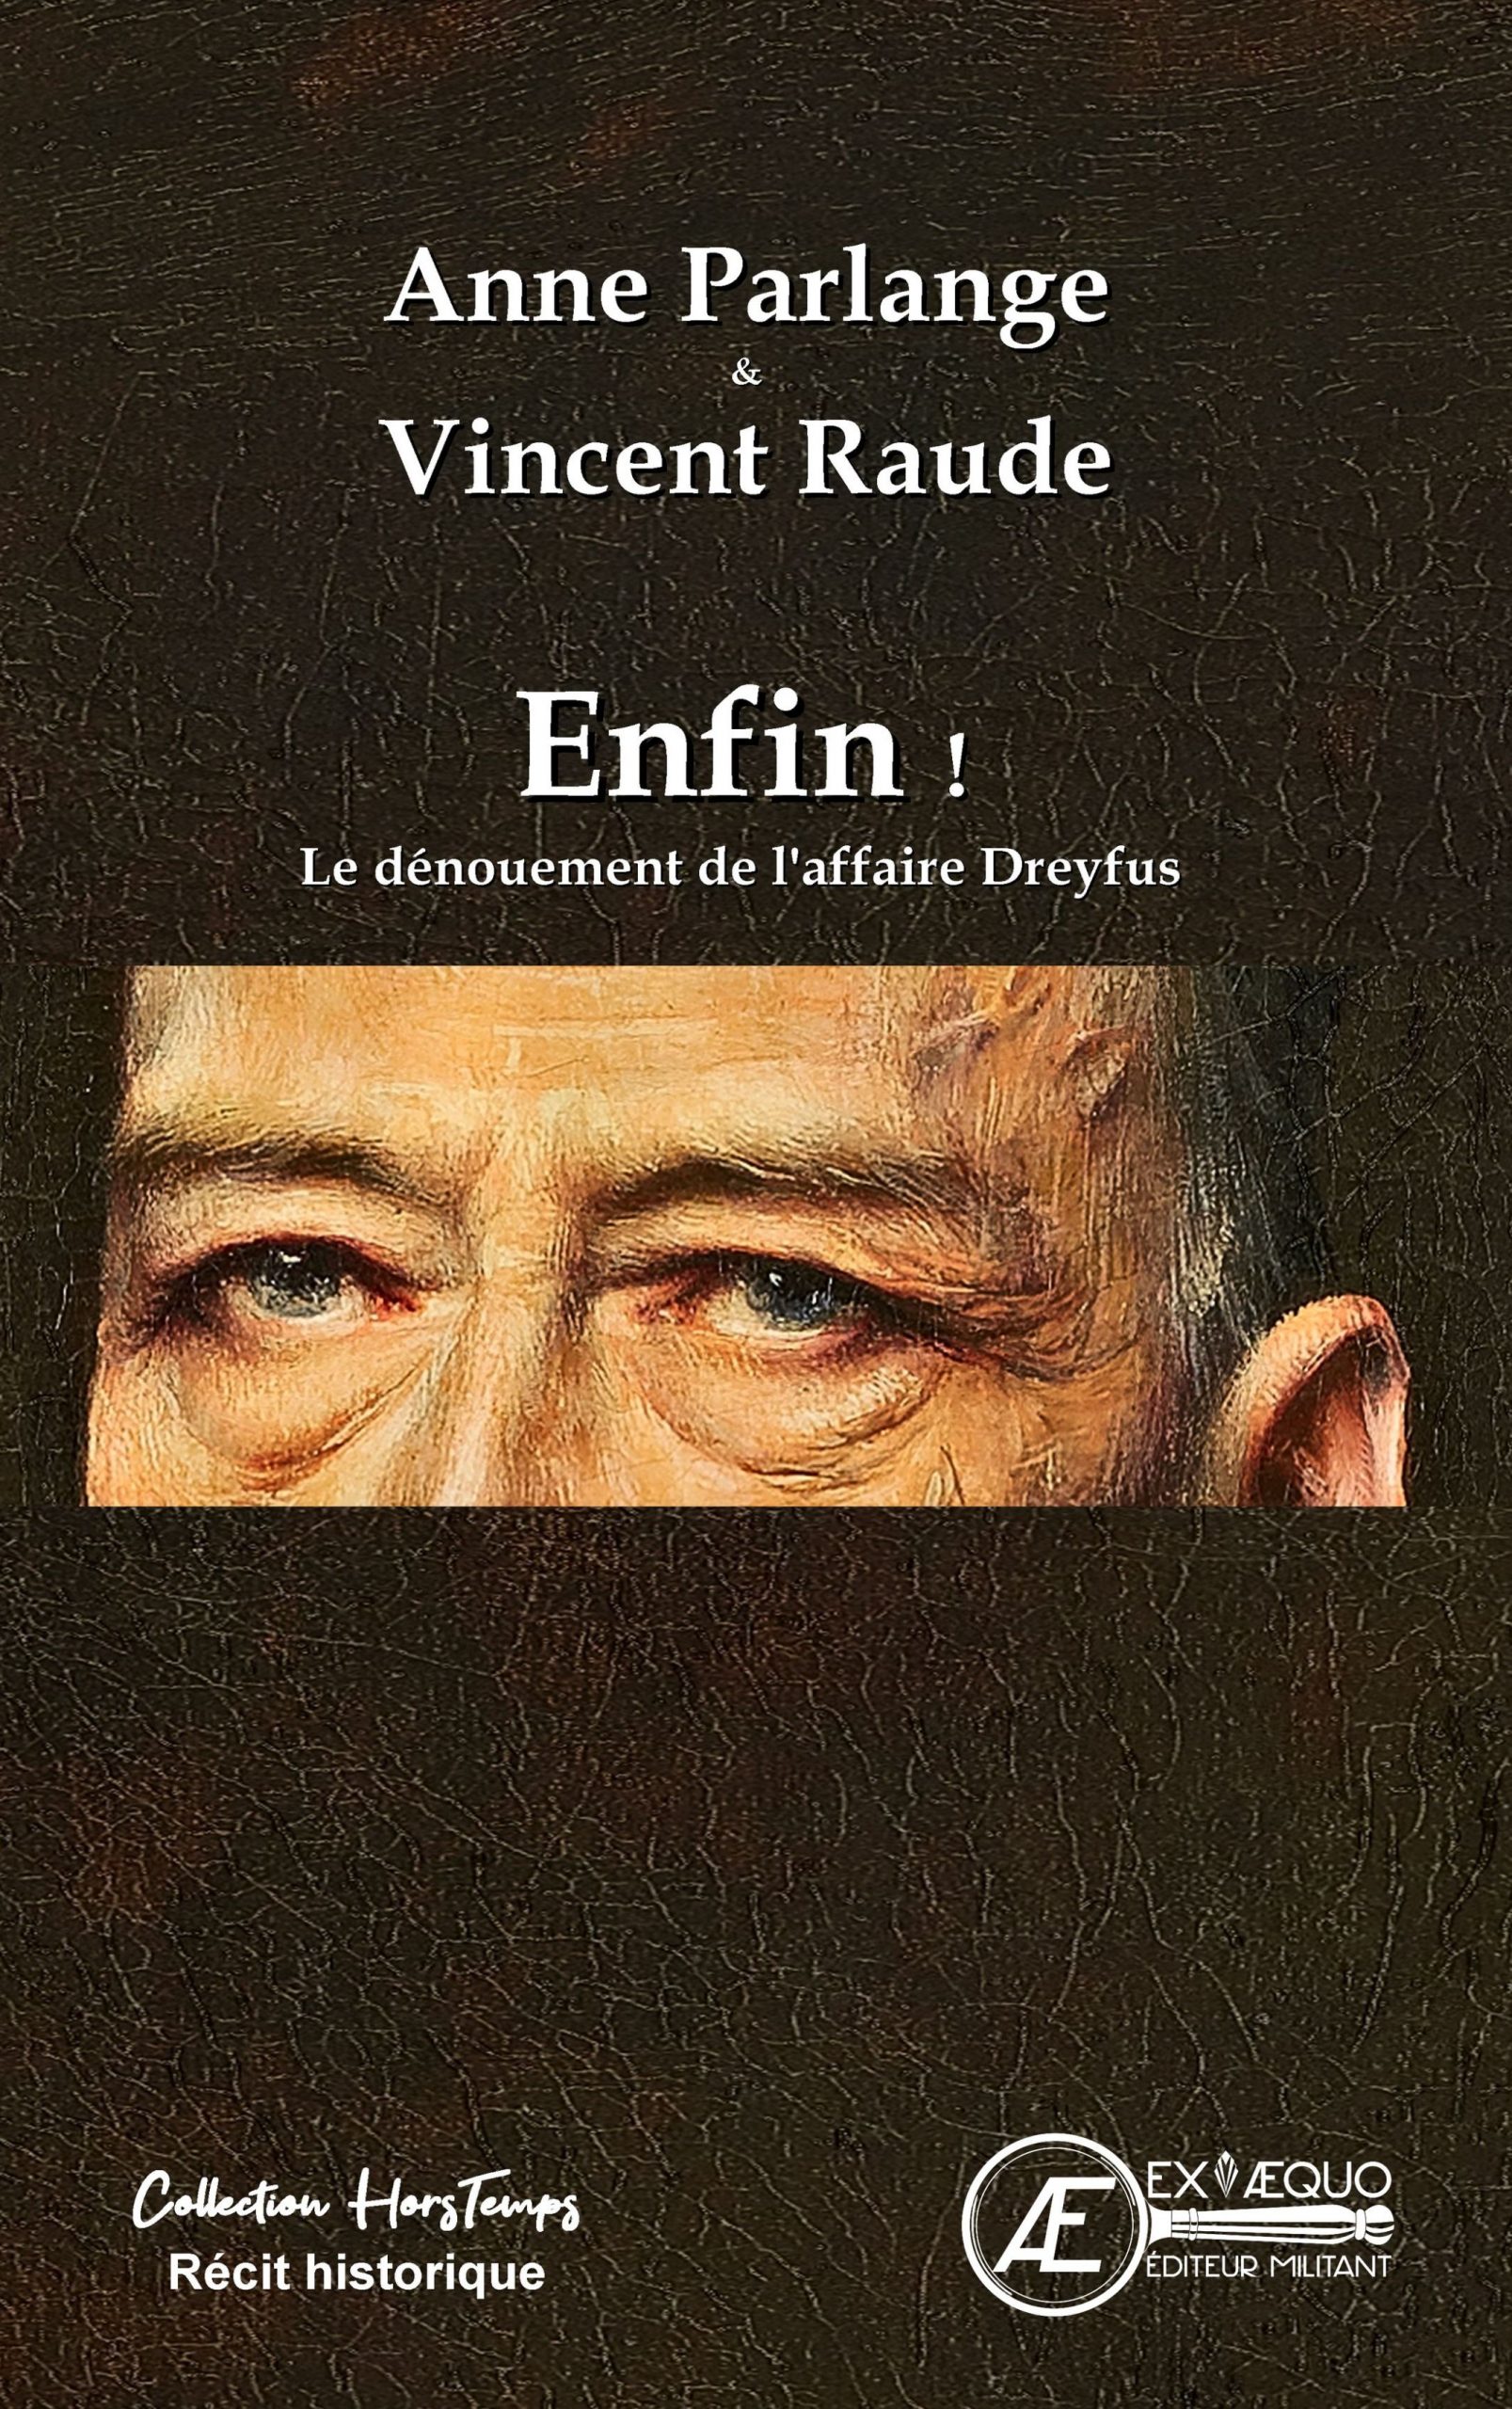 You are currently viewing Enfin ! Le dénouement de l’affaire Dreyfus, d’Anne Parlange & Vincent Raude